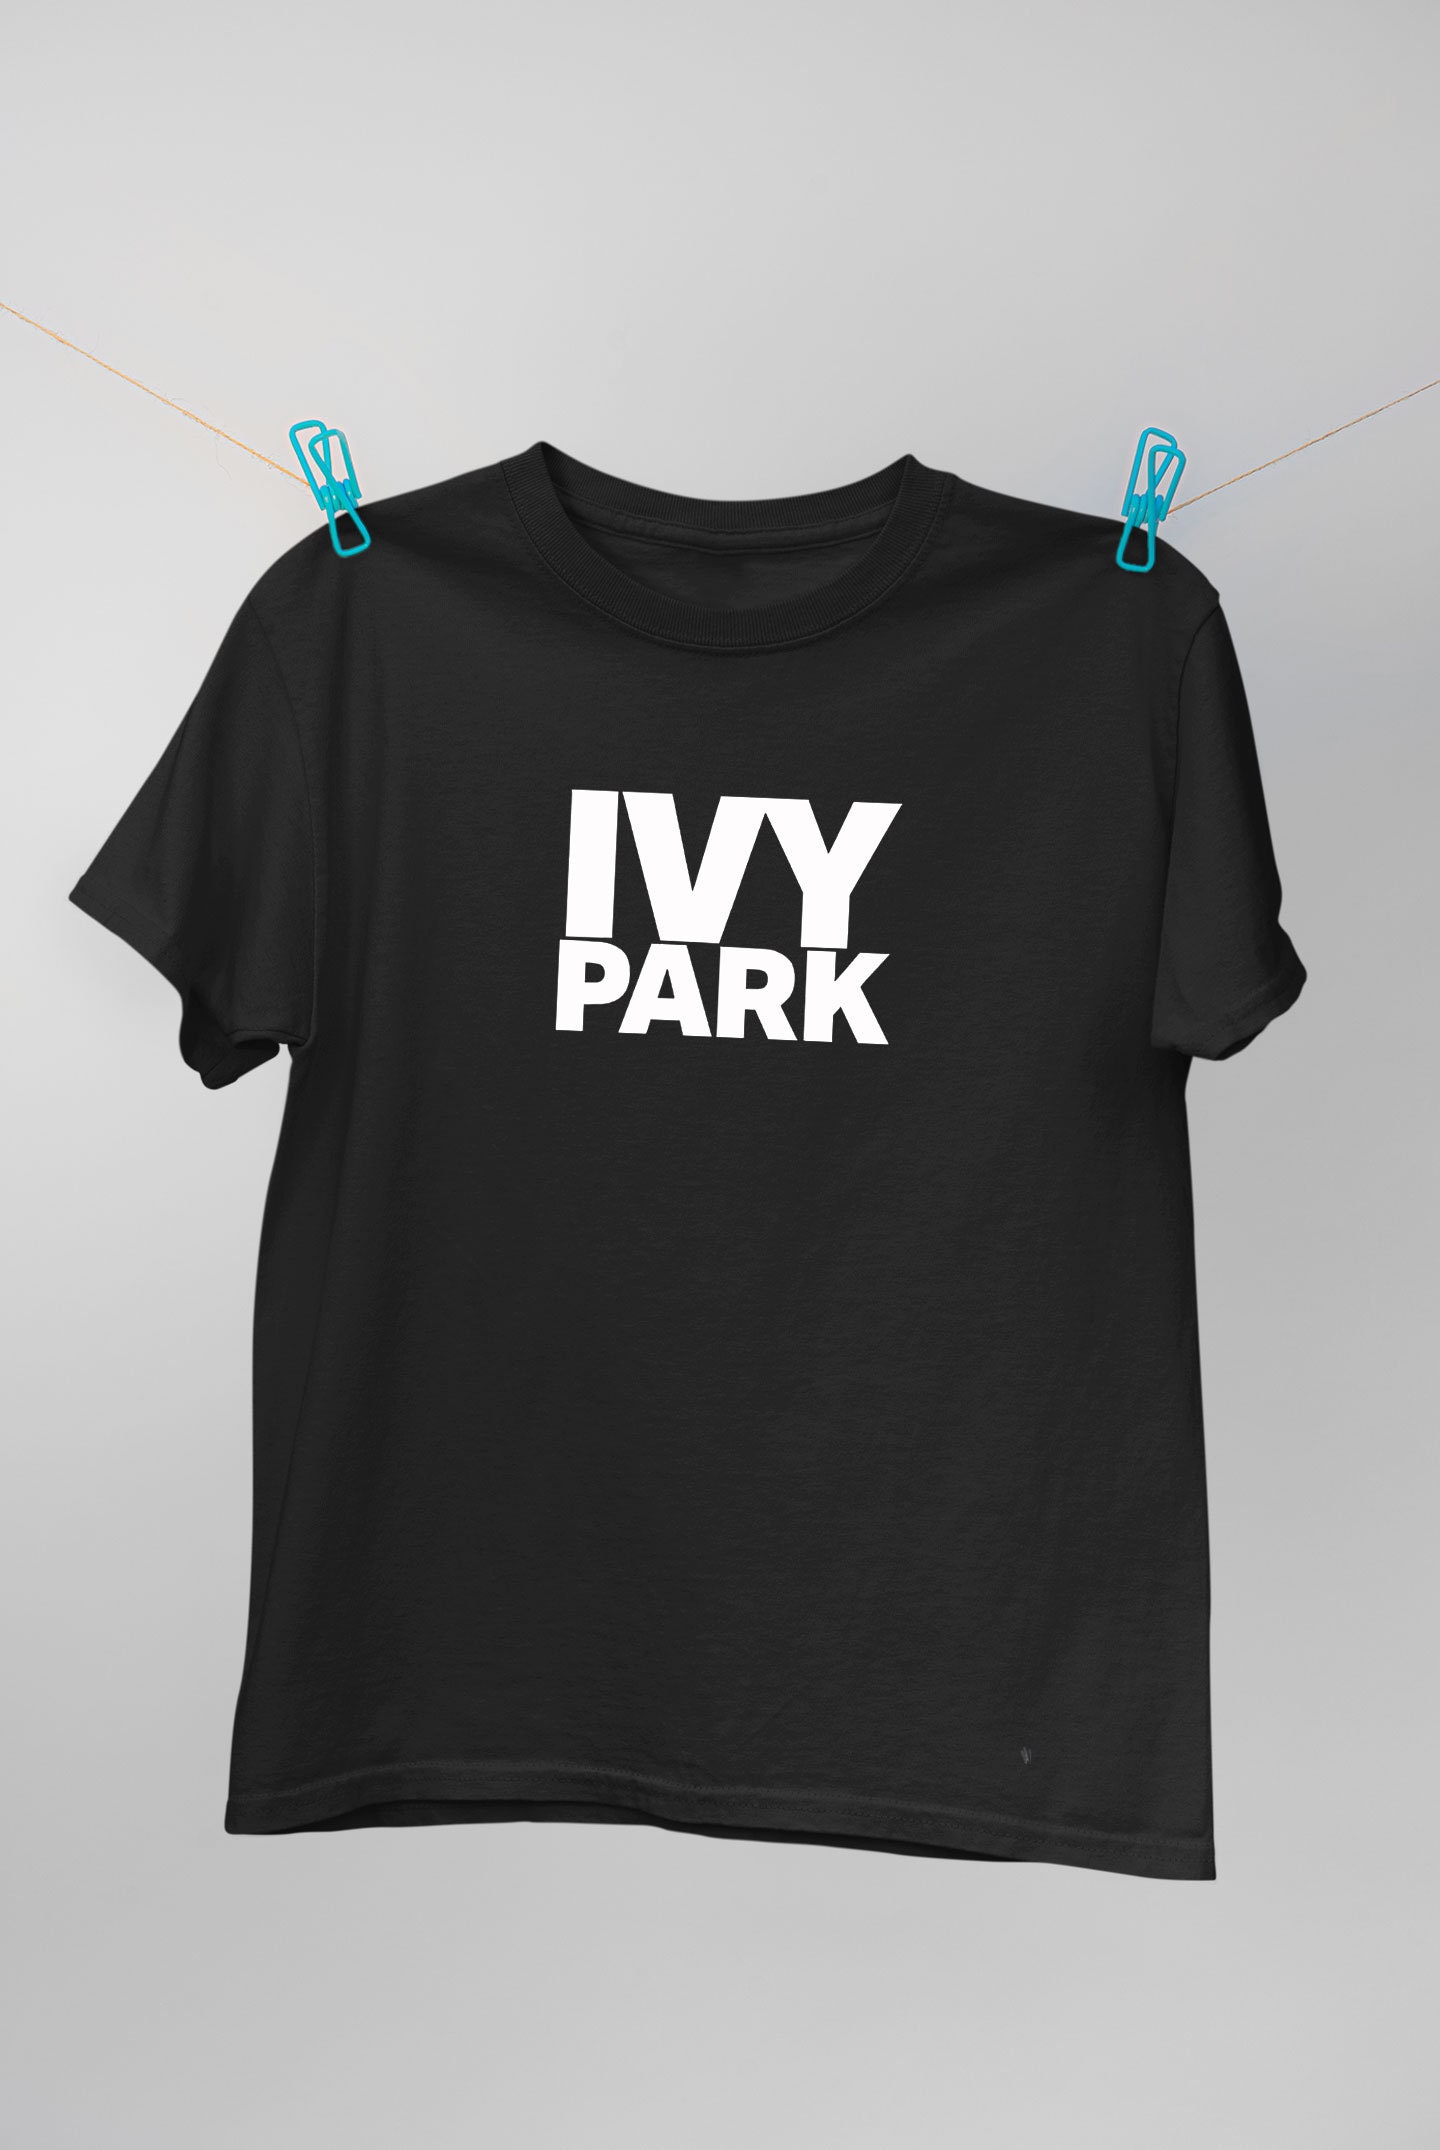 Utålelig Sprængstoffer I øvrigt Ivy Park Logo Men's Womens Top Black Tee Clothing Tshirt - Etsy